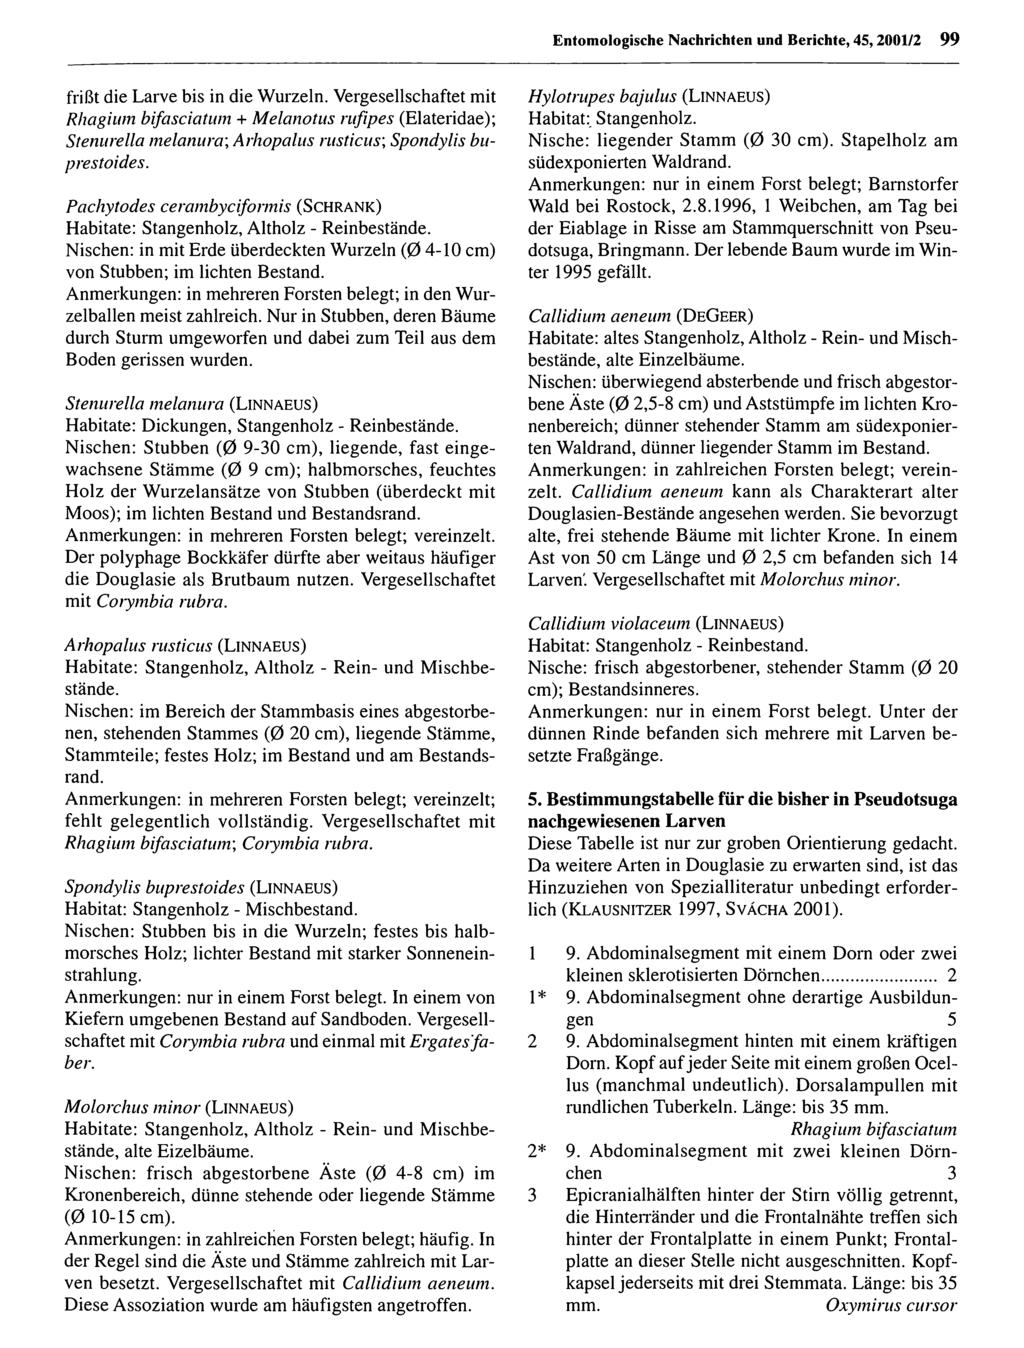 Entomologische Nachrichten und Berichte; download Entomologische unter www.biologiezentrum.at Nachrichten und Berichte, 45,2001/2 99 frißt die Larve bis in die Wurzeln.